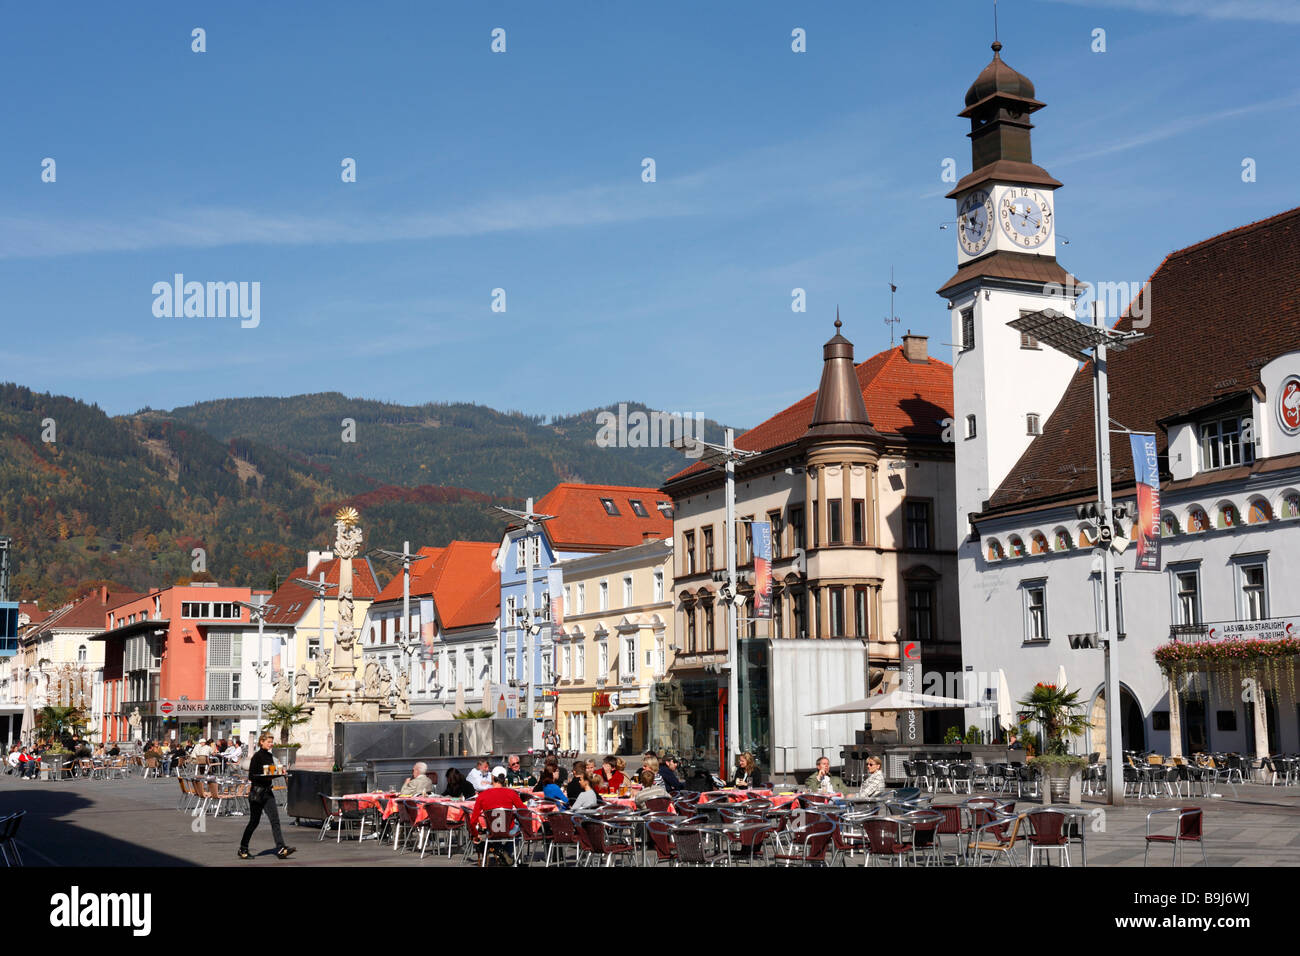 Main Square with Town Hall, Leoben, Styria, Austria, Europe Stock Photo